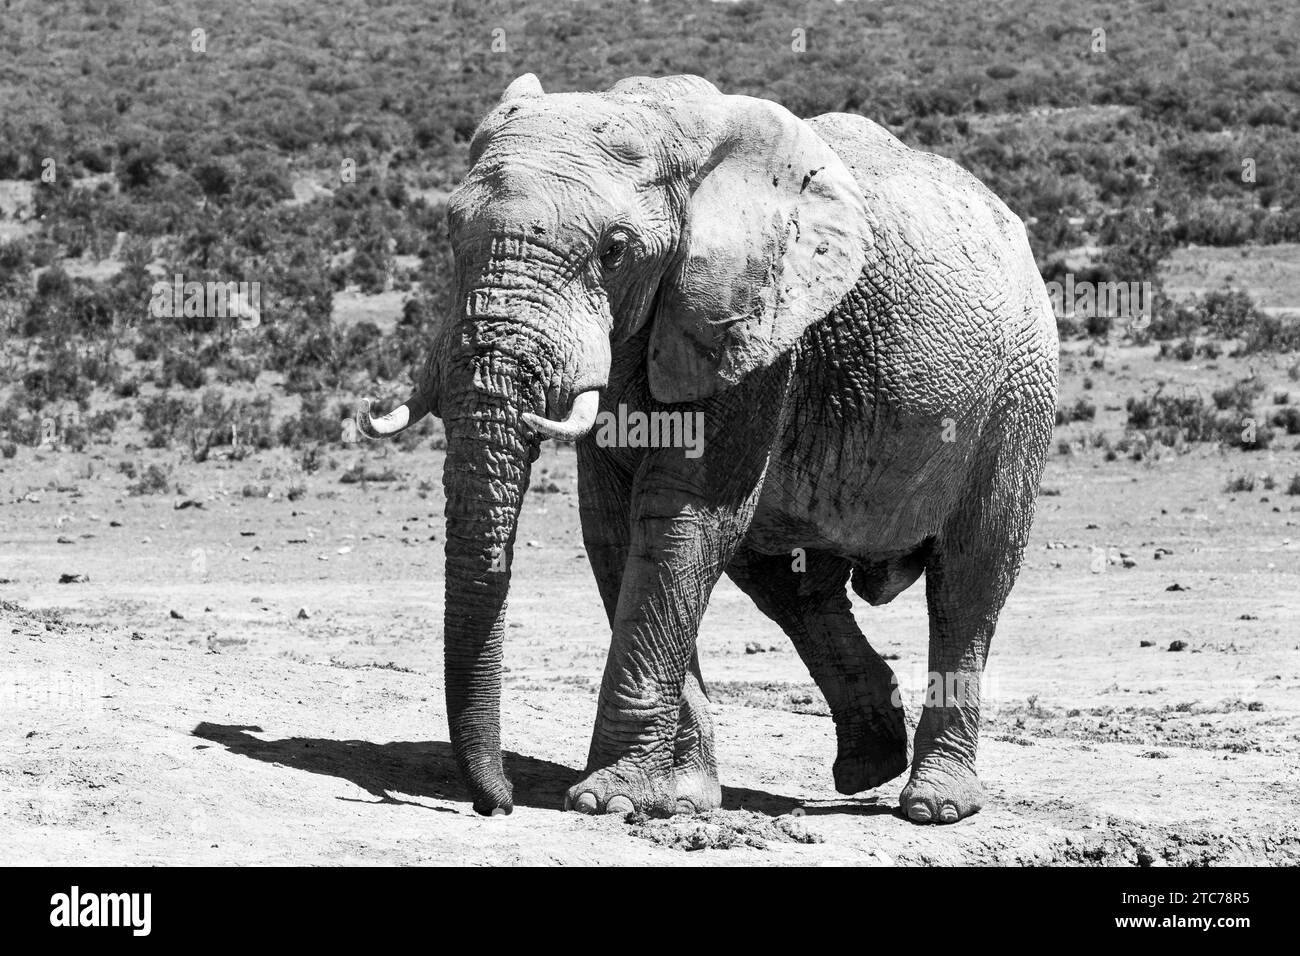 Taureau éléphant d'Afrique (Loxodonta africana) Addo Elephant National Park, Eastern Cape, Afrique du Sud Banque D'Images